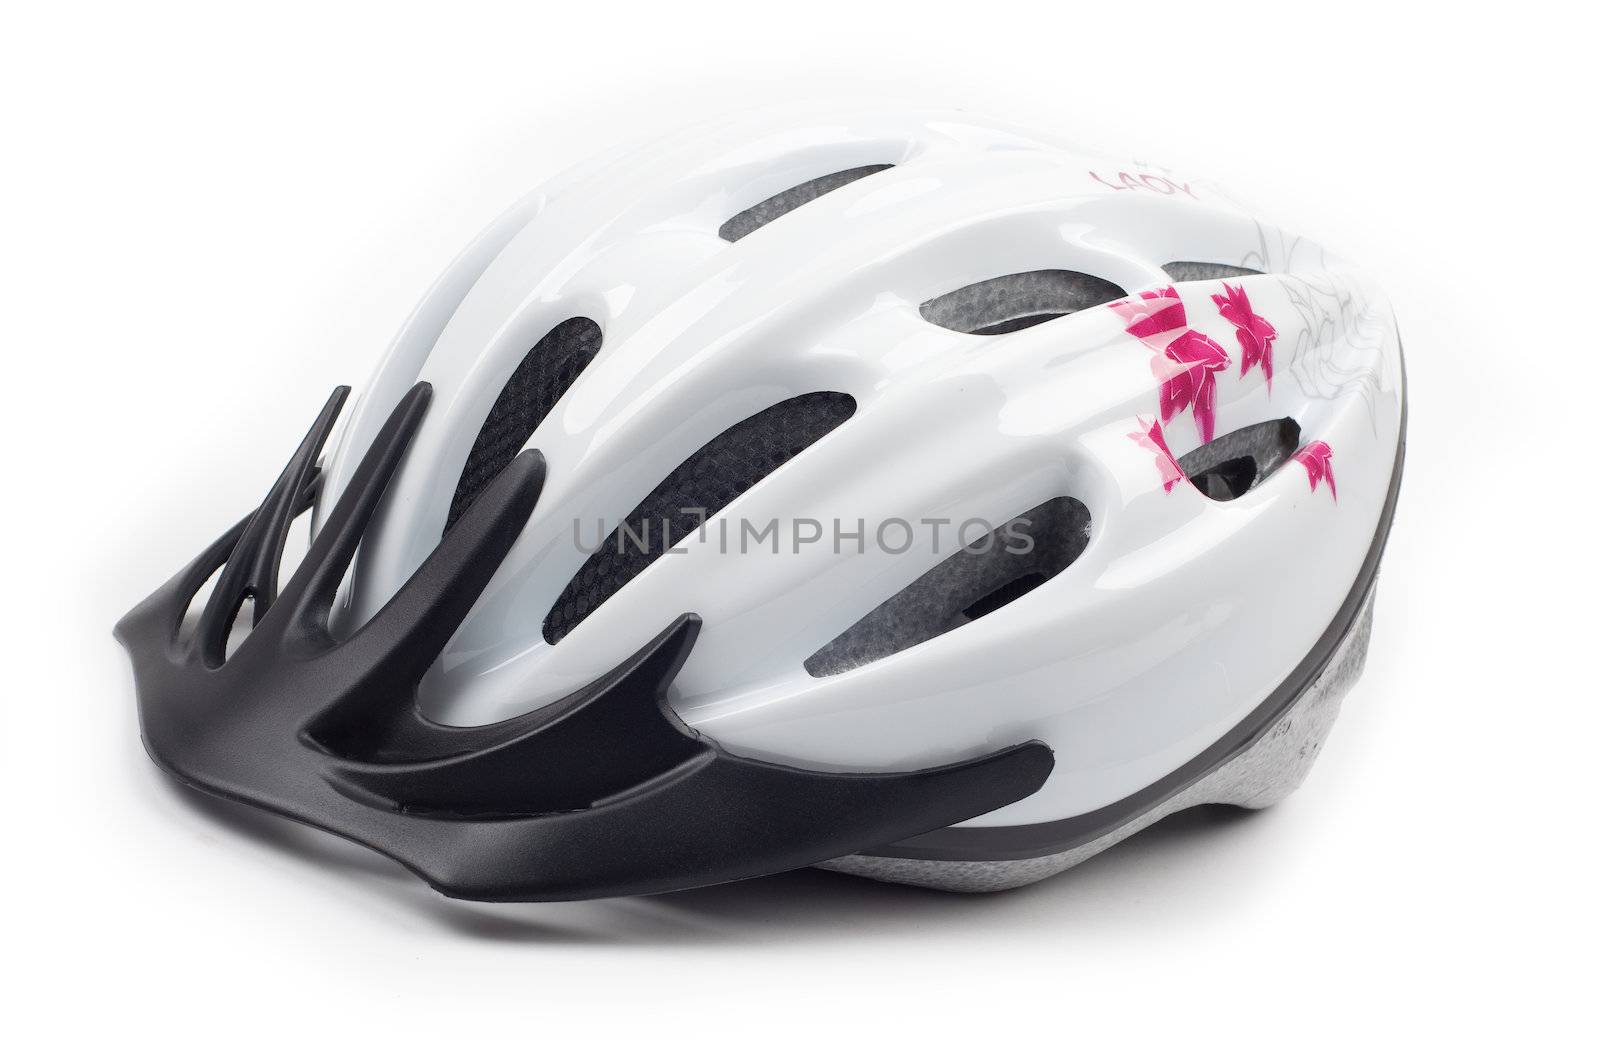 Bike helmet by Rainman